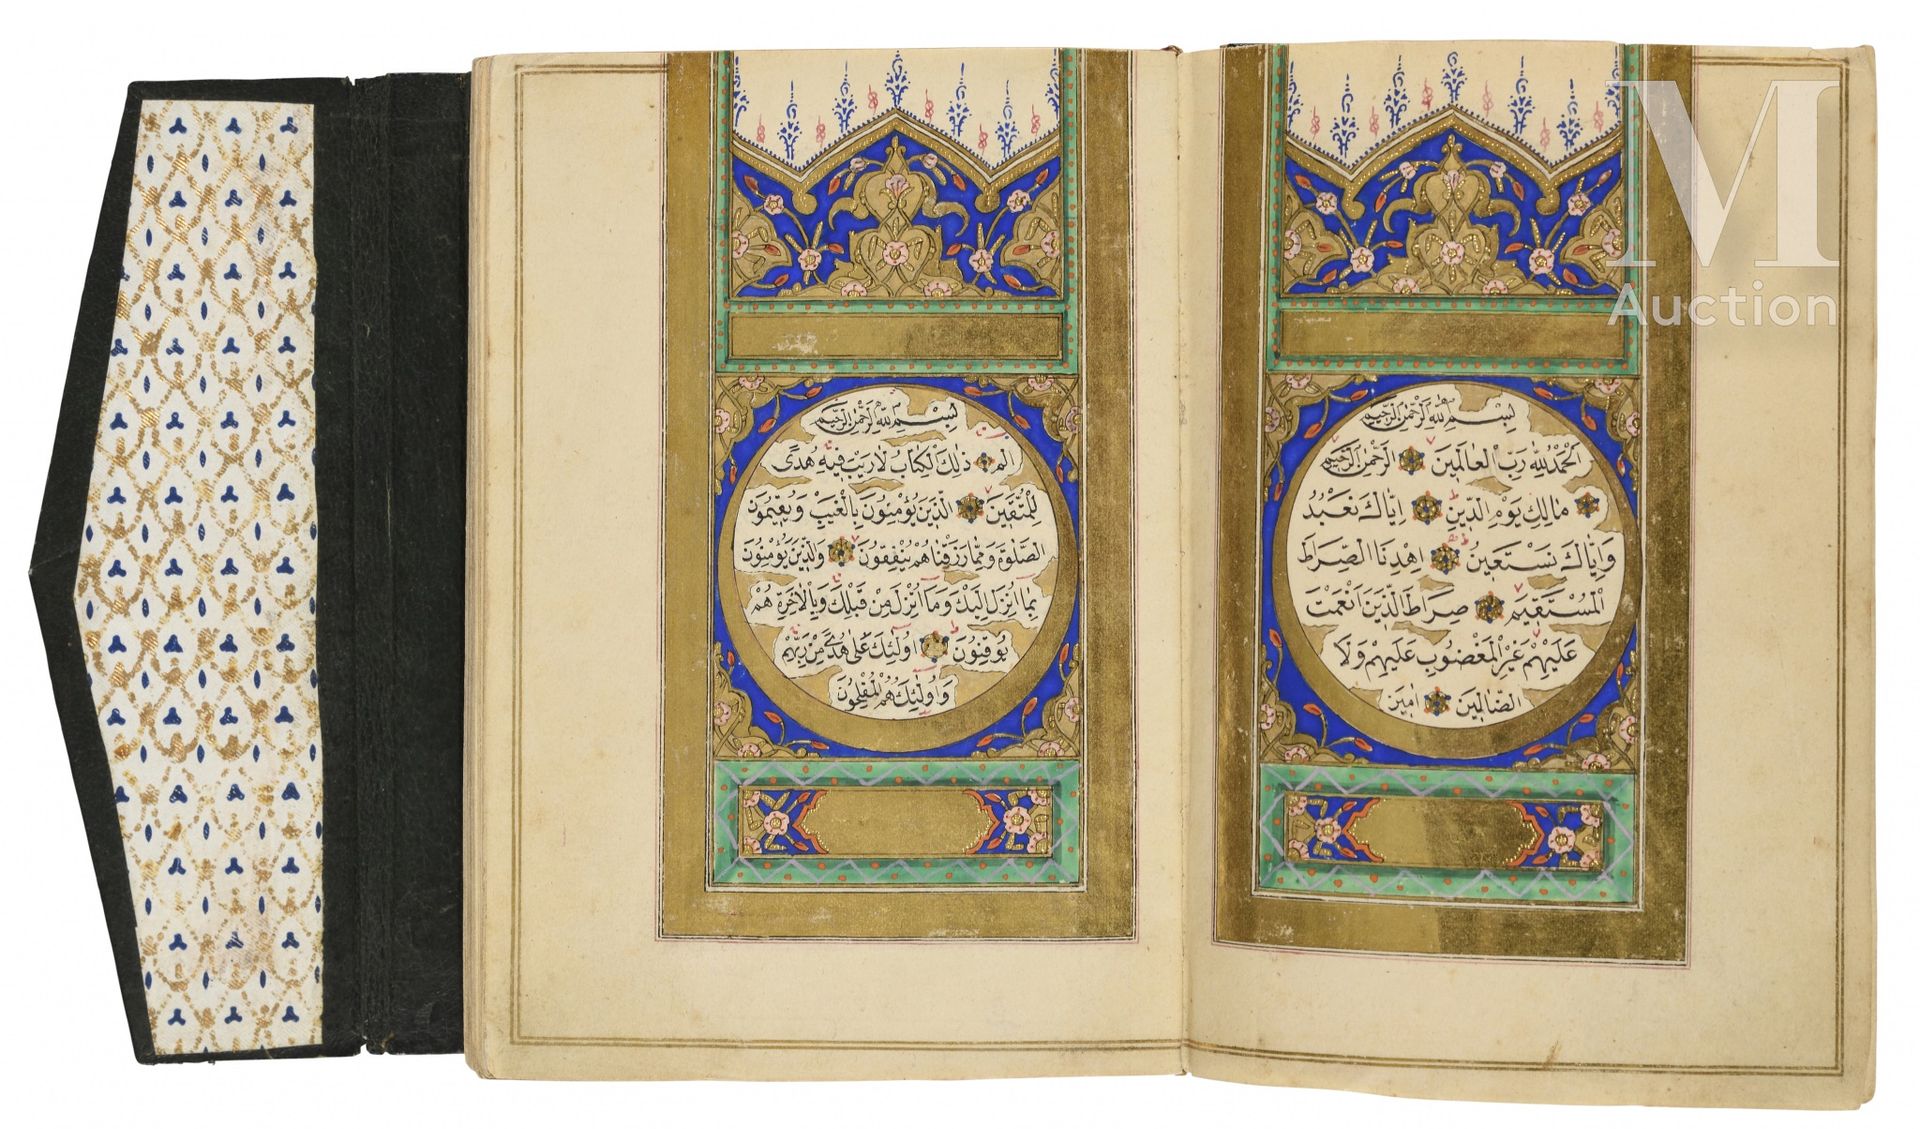 Coran d'époque ottomane Par 'Ali Al-Khulusi

Turquie, daté 1279H. ('''=1862) 

M&hellip;